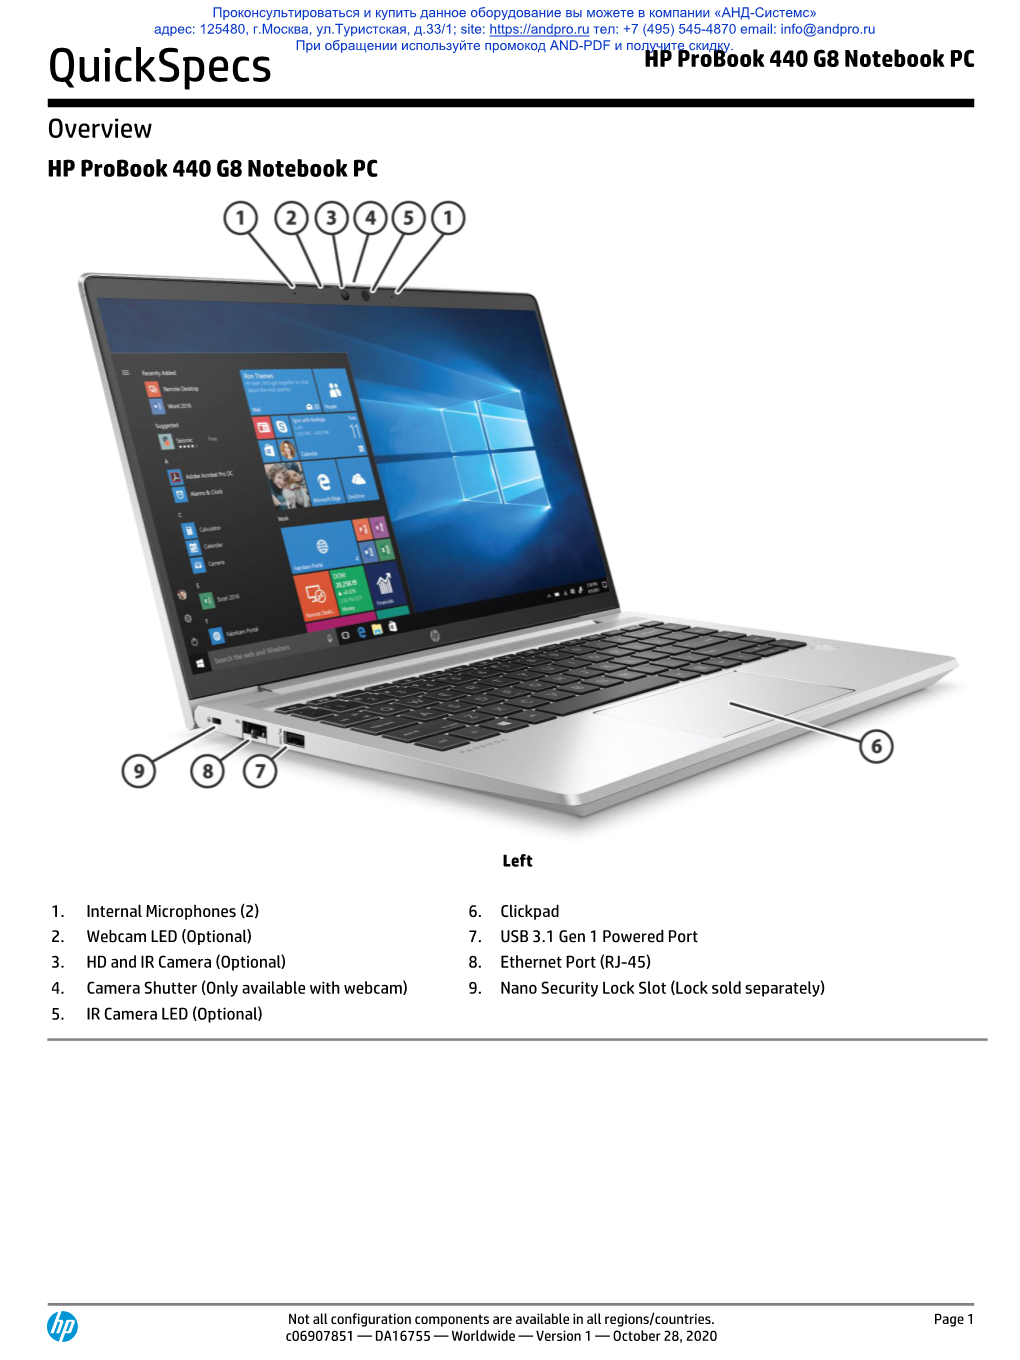 HP Probook 440 G8 Notebook PC